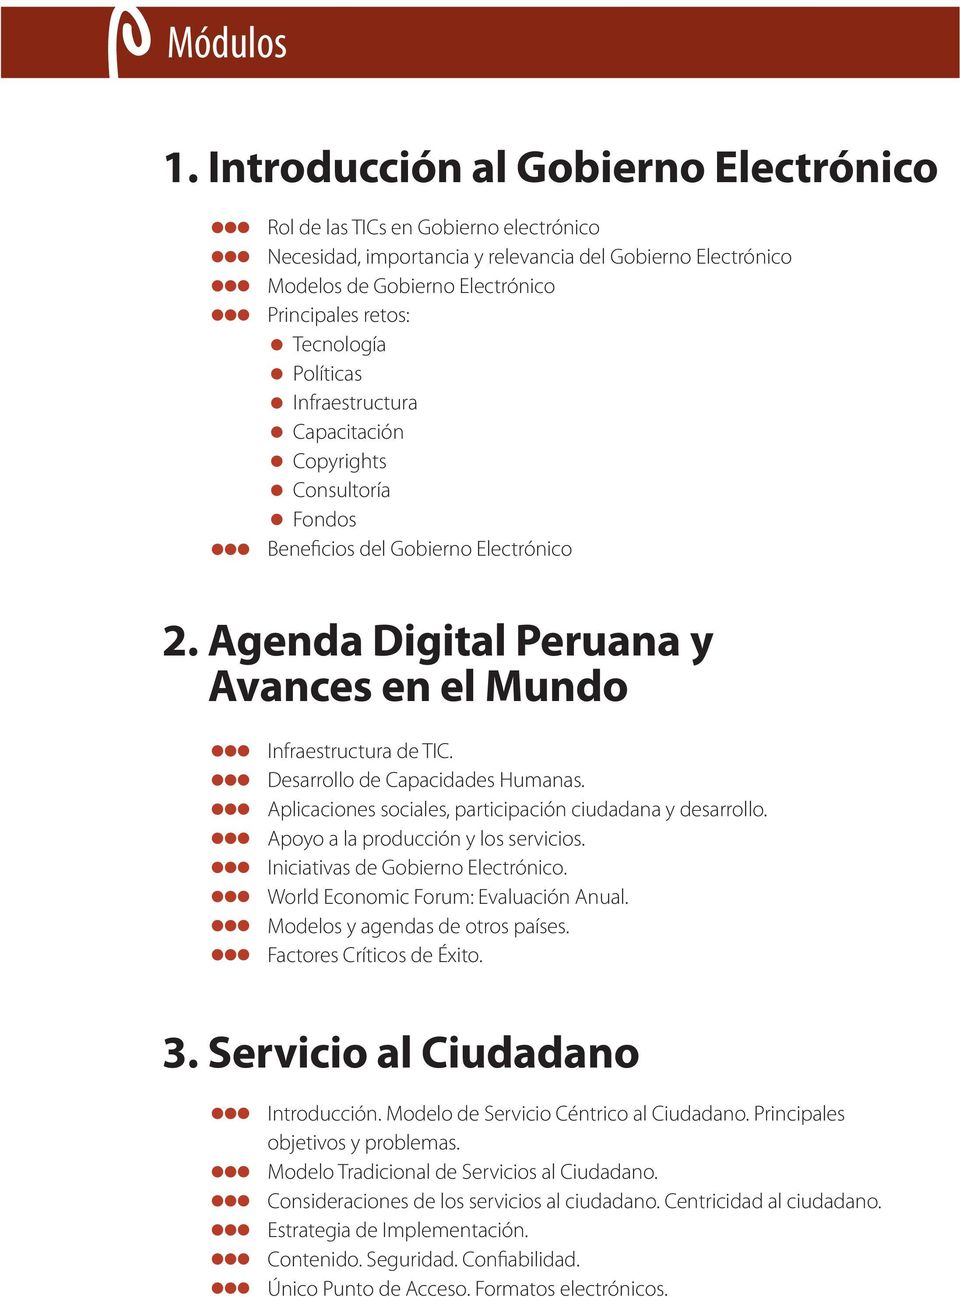 Políticas Infraestructura Capacitación Copyrights Consultoría Fondos Beneficios del Gobierno Electrónico 2. Agenda Digital Peruana y Avances en el Mundo Infraestructura de TIC.